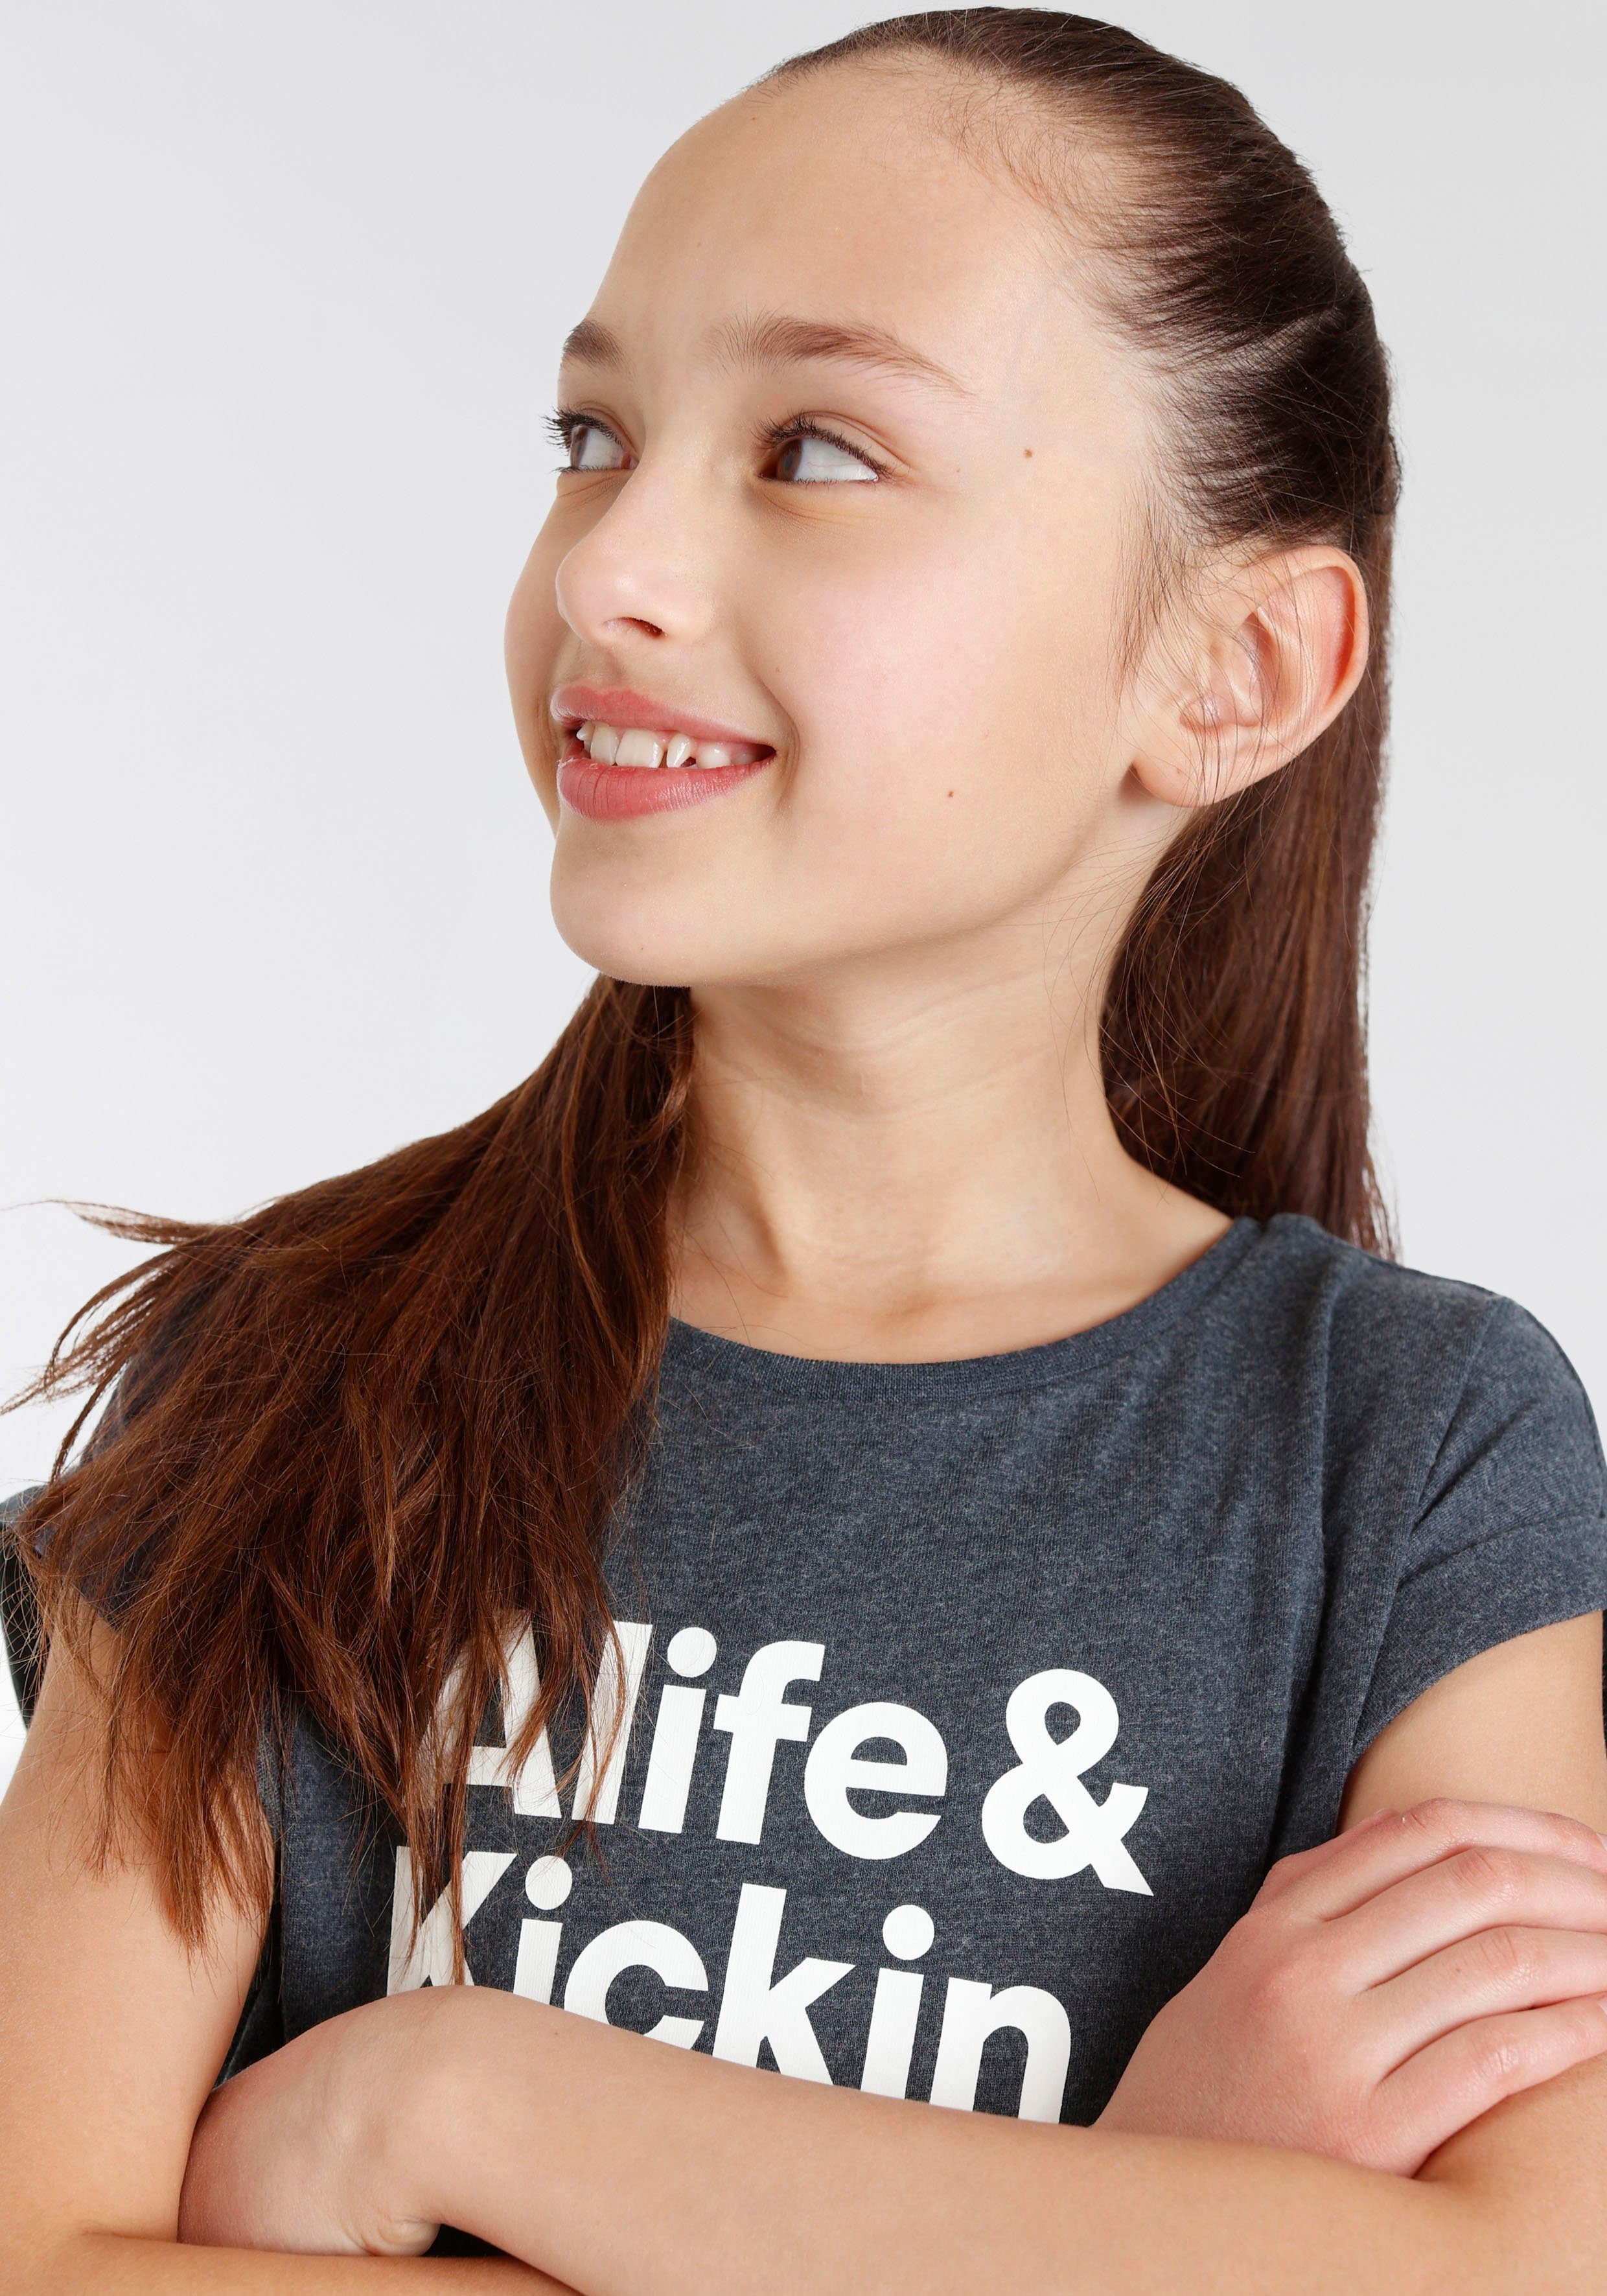 NEUE T-Shirt Logo mit Druck Kids. Kickin MARKE! Alife & Alife Kickin für &